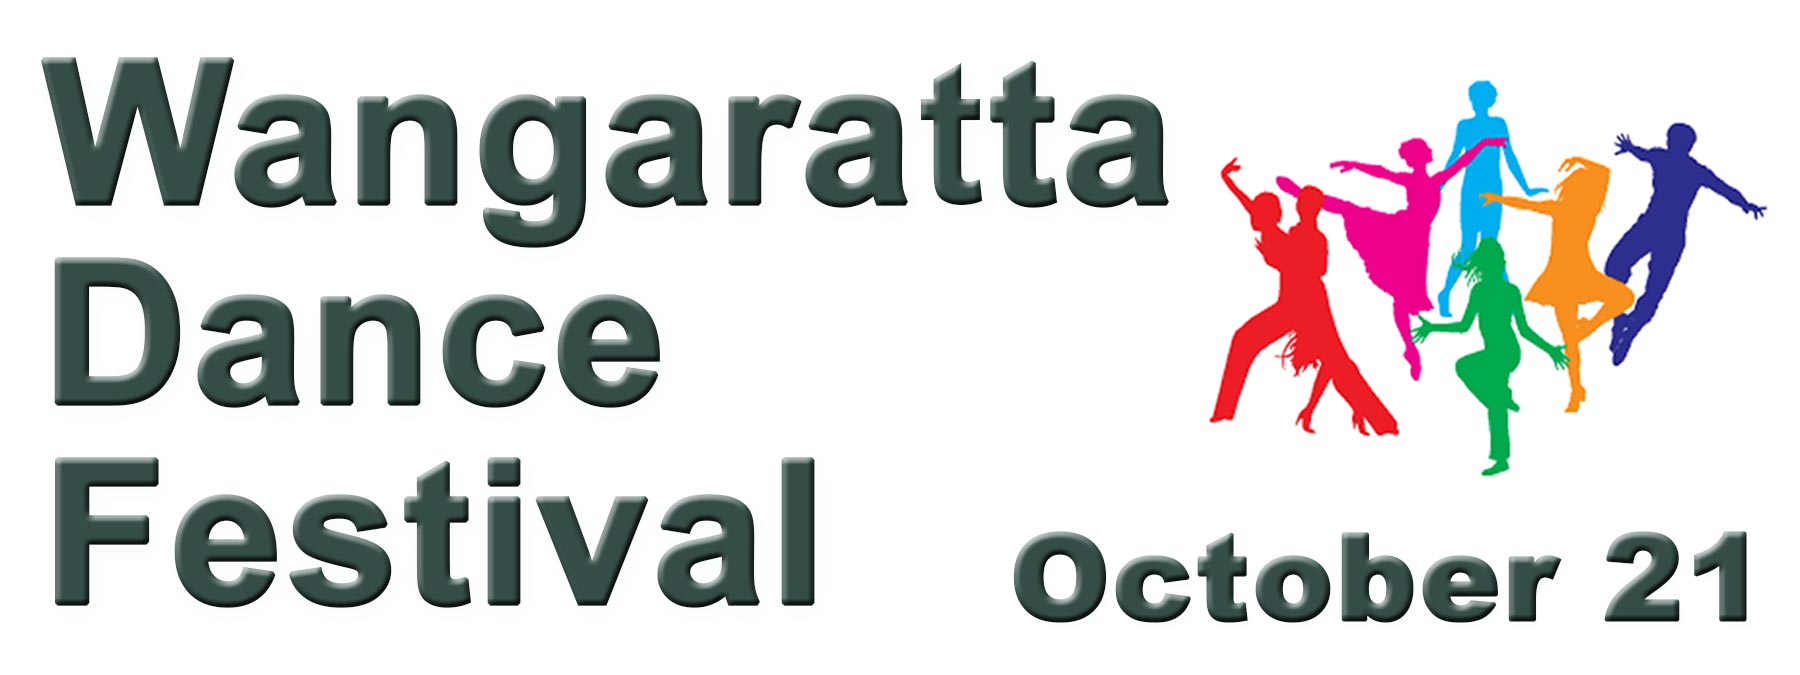 Wangaratta Dance Festival